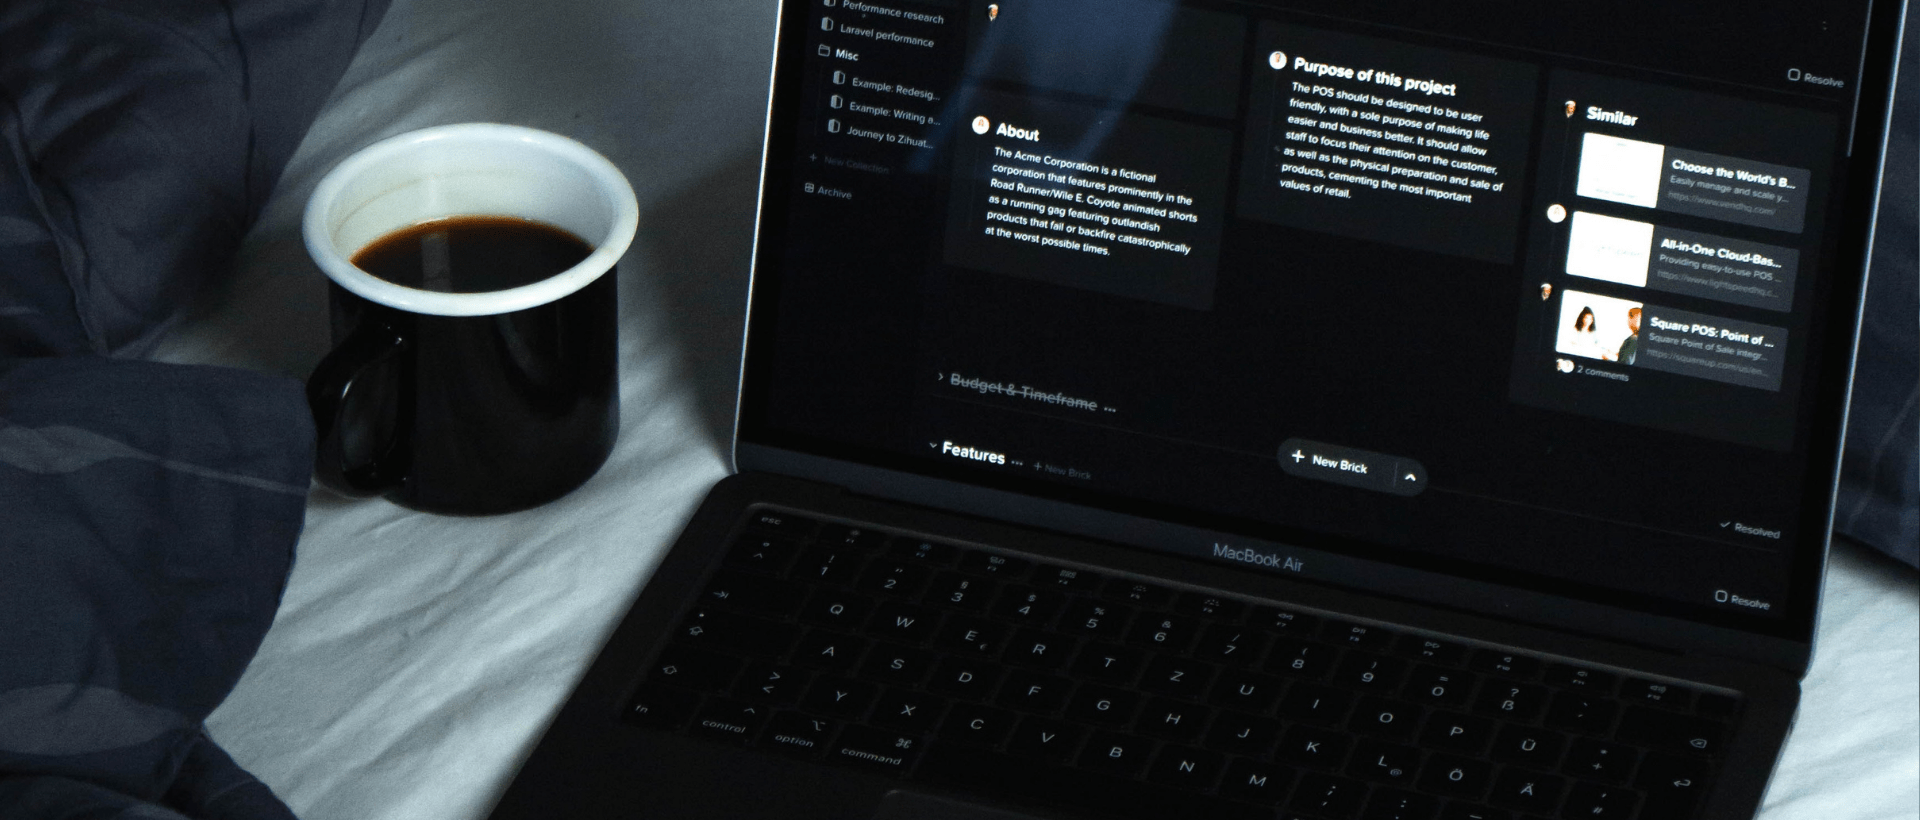 MacBook Pro im dunklen auf einem Bett. Auf dem Bildschirm ist ein Programm im dark mode offen